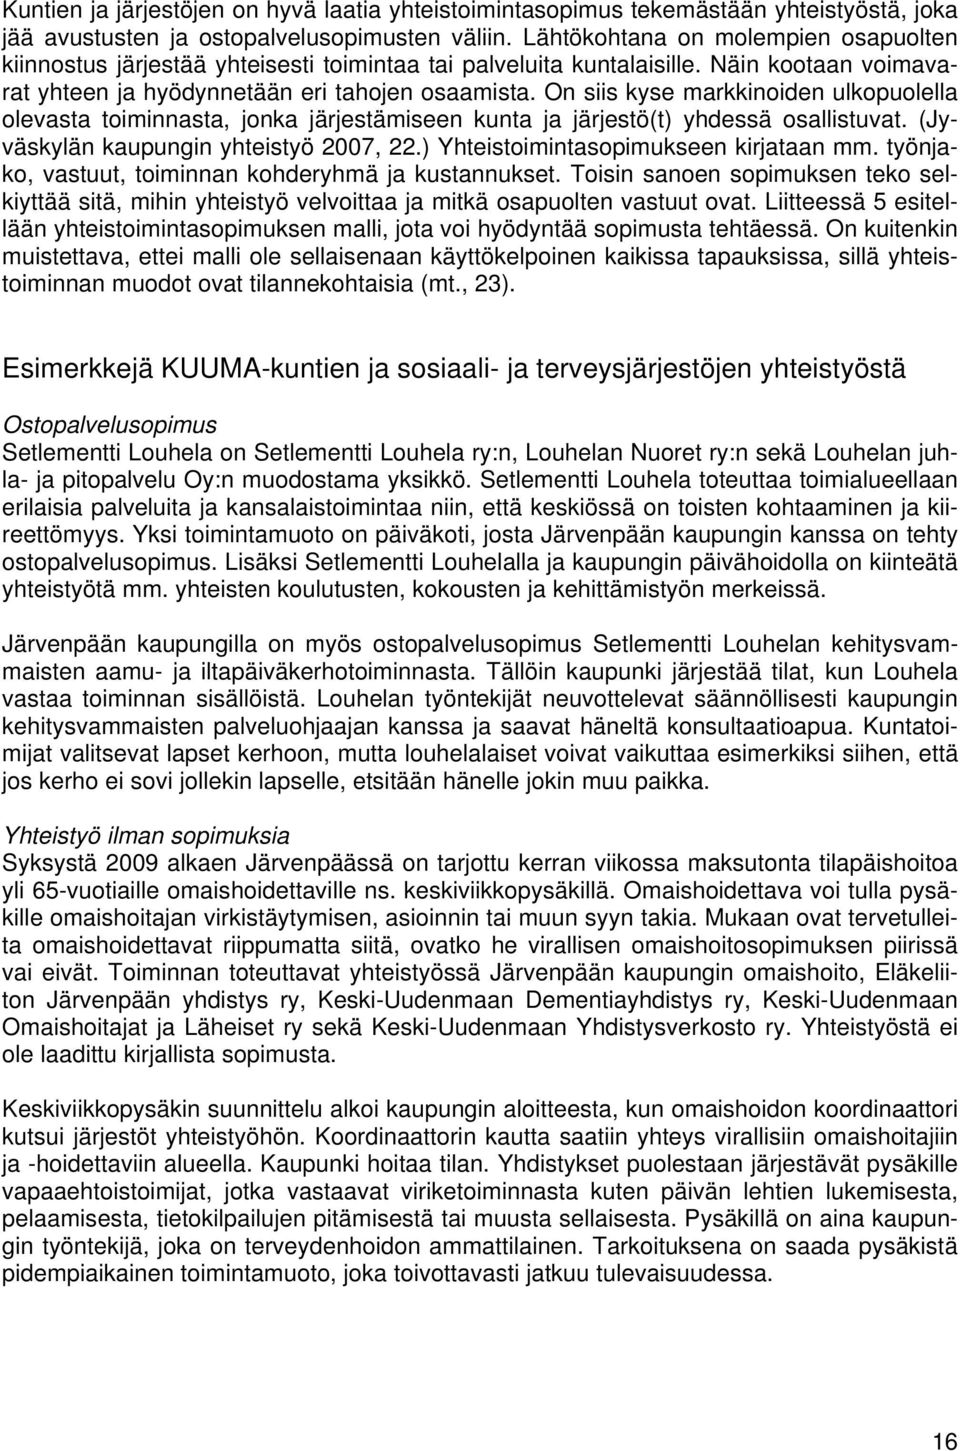 On siis kyse markkinoiden ulkopuolella olevasta toiminnasta, jonka järjestämiseen kunta ja järjestö(t) yhdessä osallistuvat. (Jyväskylän kaupungin yhteistyö 2007, 22.